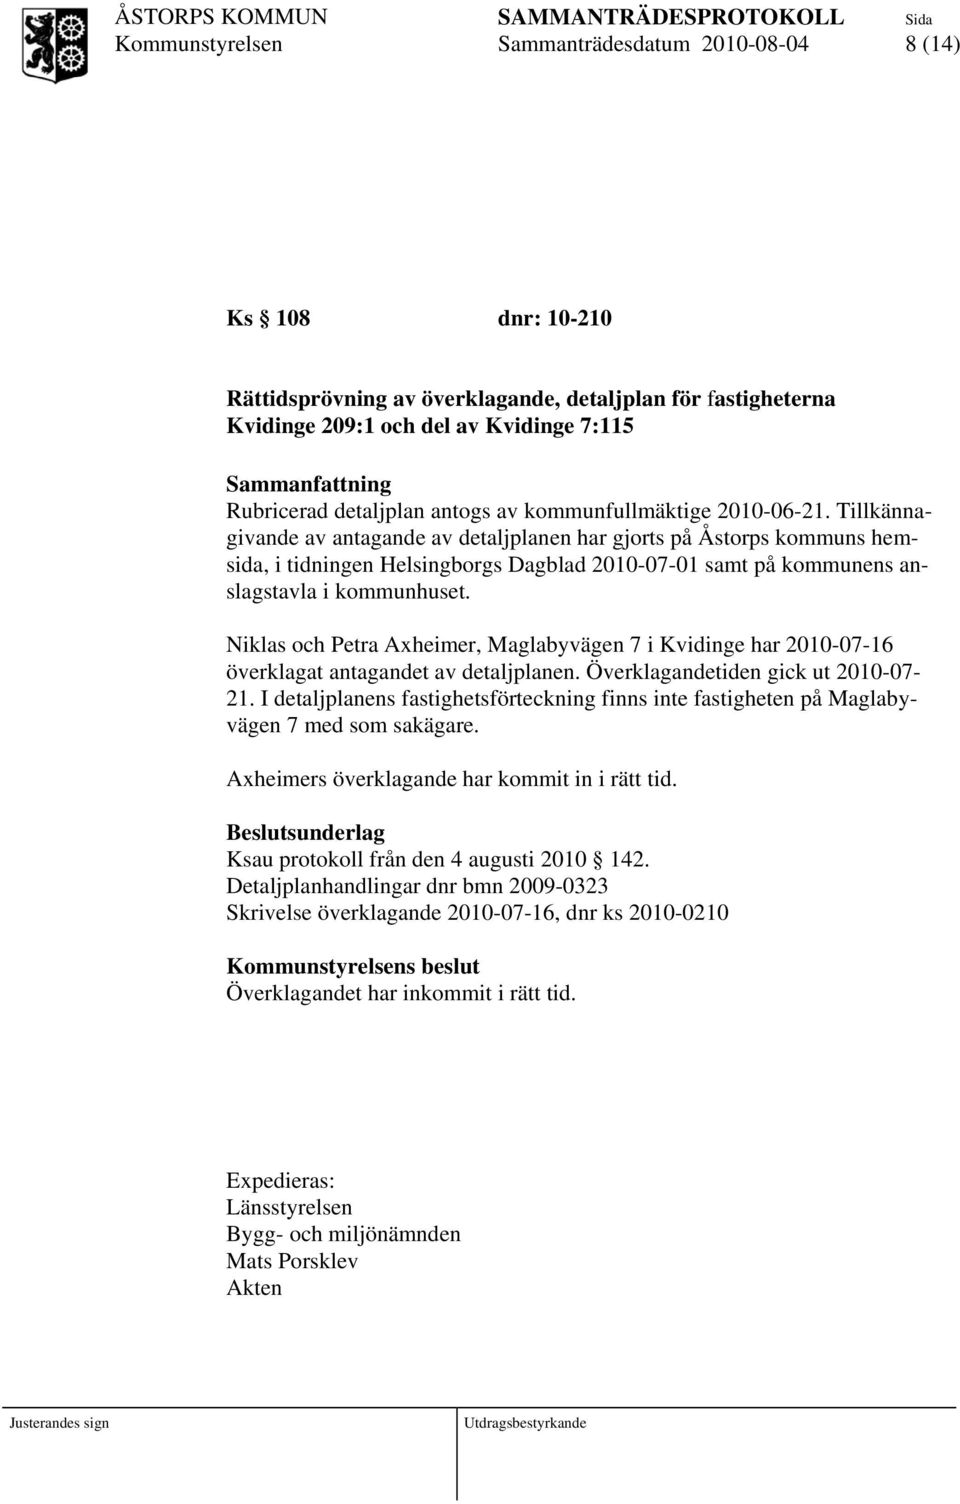 Tillkännagivande av antagande av detaljplanen har gjorts på Åstorps kommuns hemsida, i tidningen Helsingborgs Dagblad 2010-07-01 samt på kommunens anslagstavla i kommunhuset.